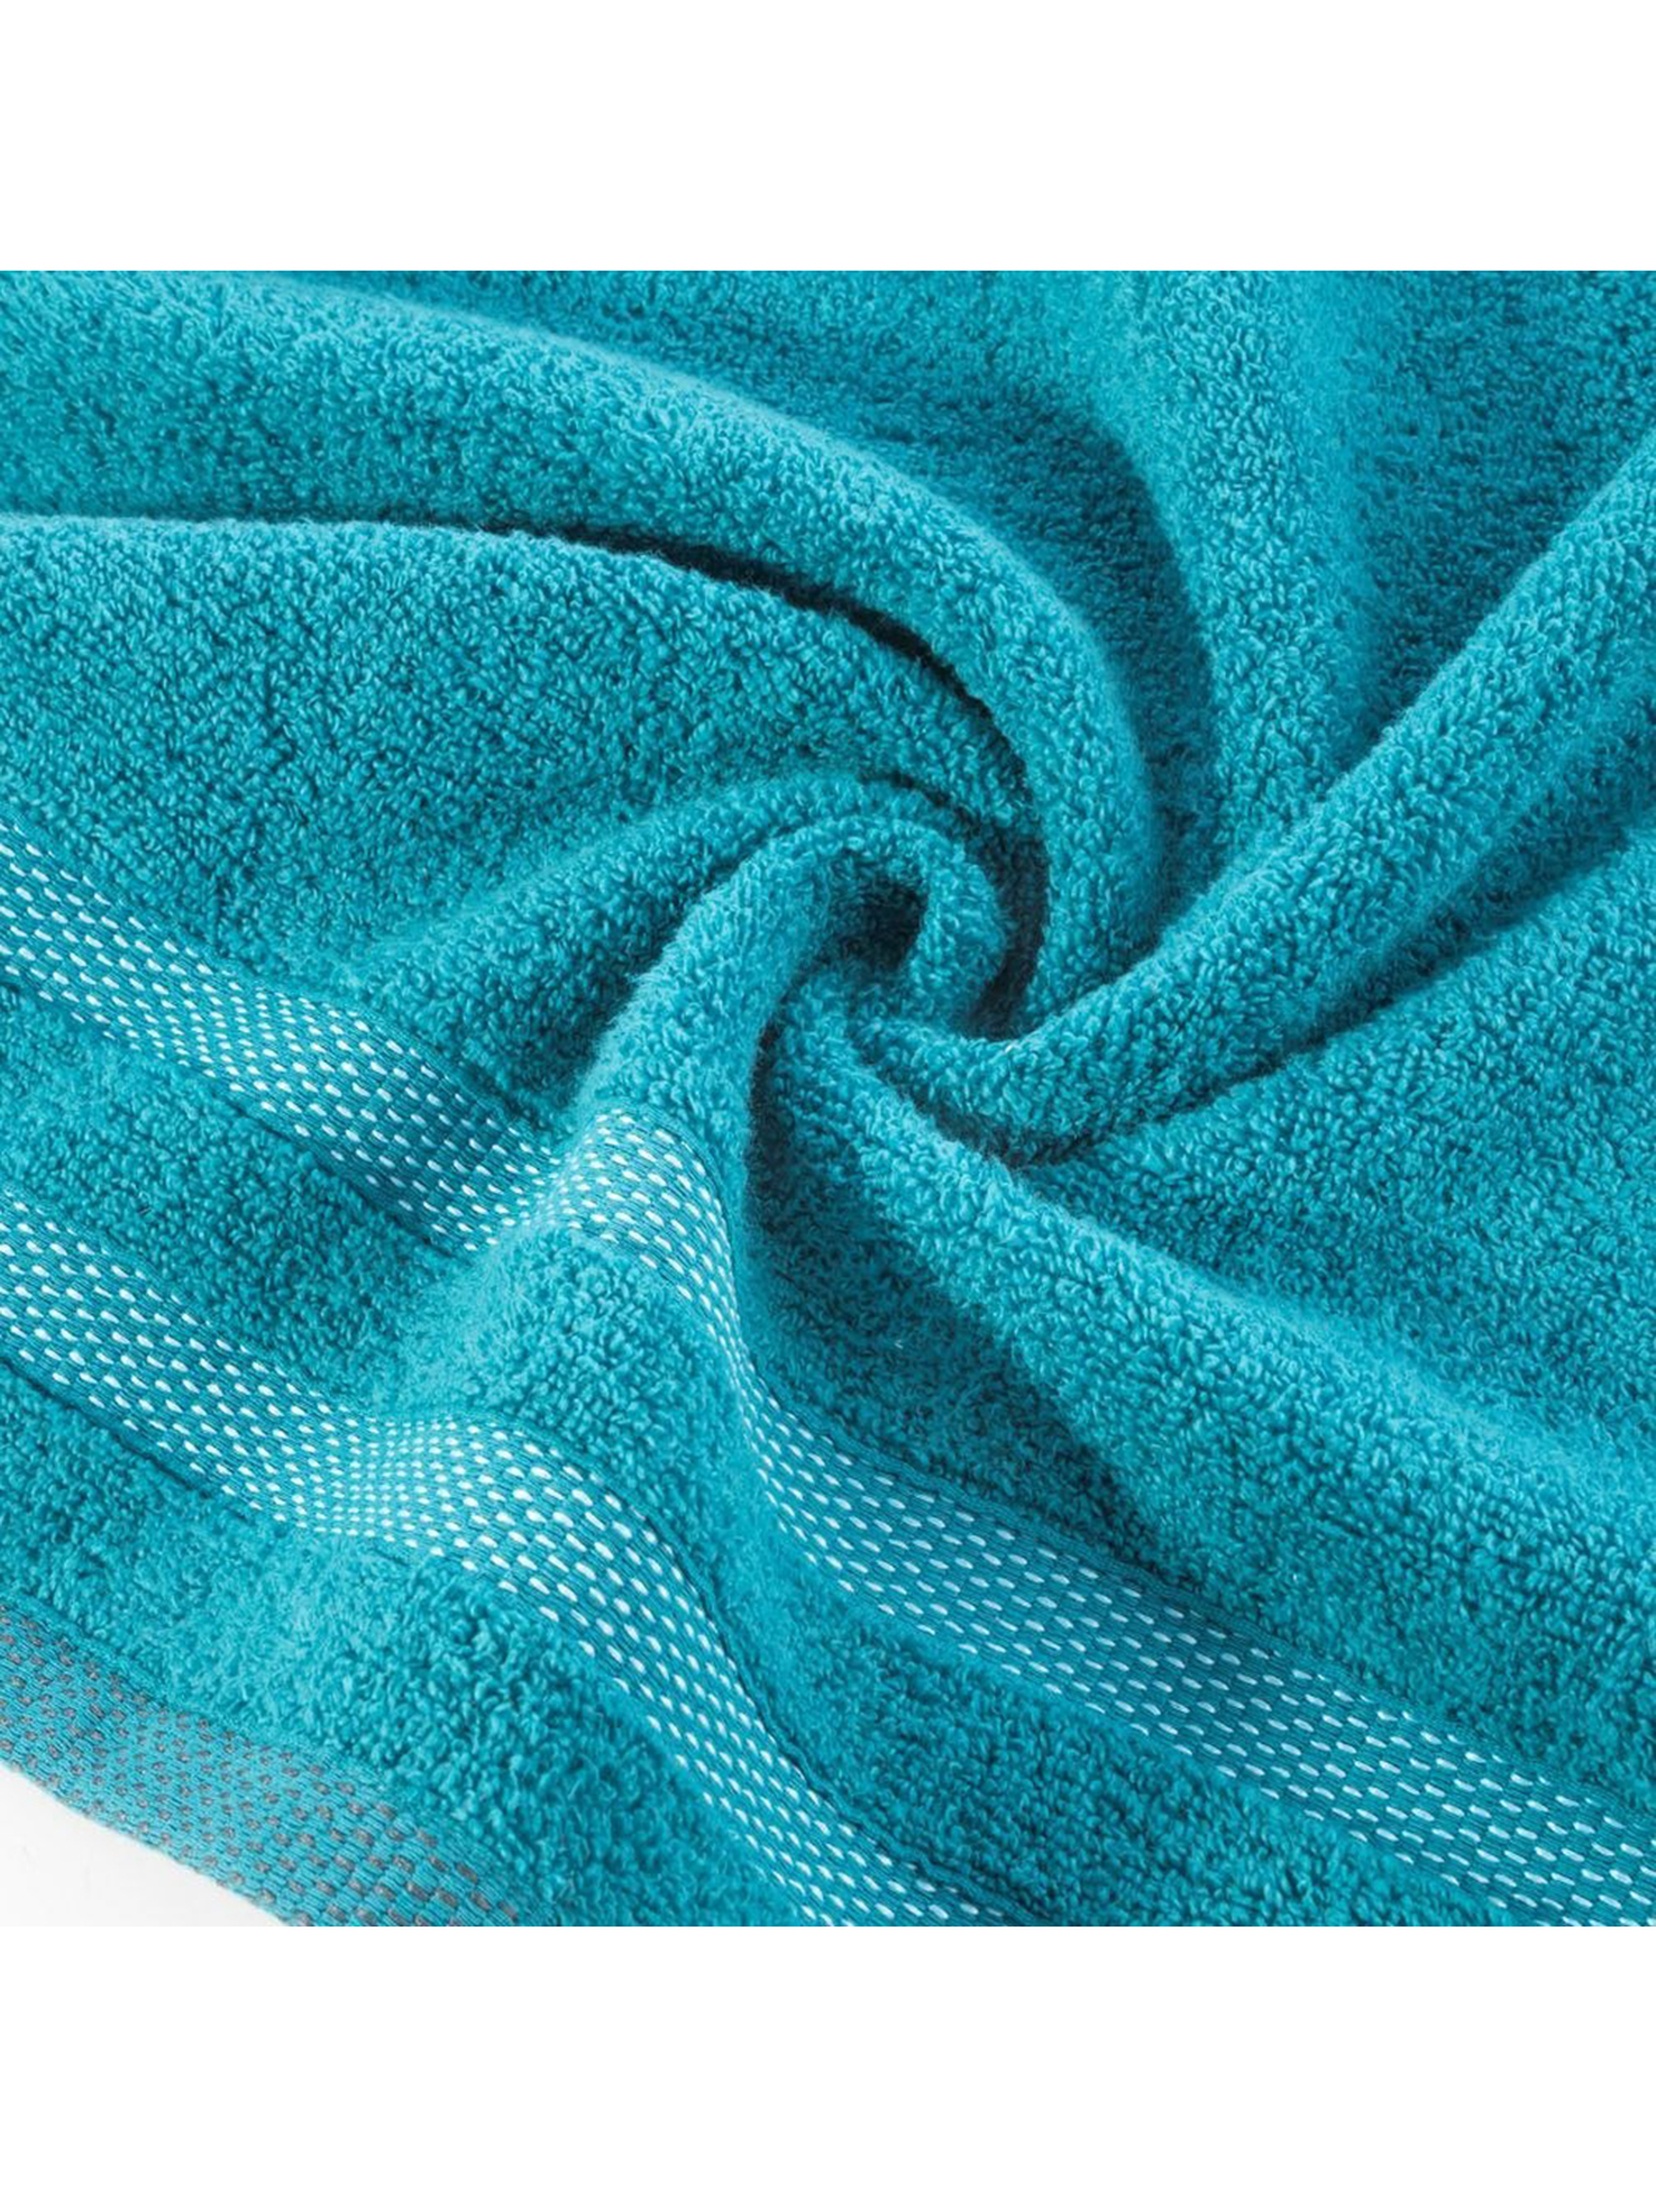 Ręcznik Riki 70x140 cm jasno turkusowy